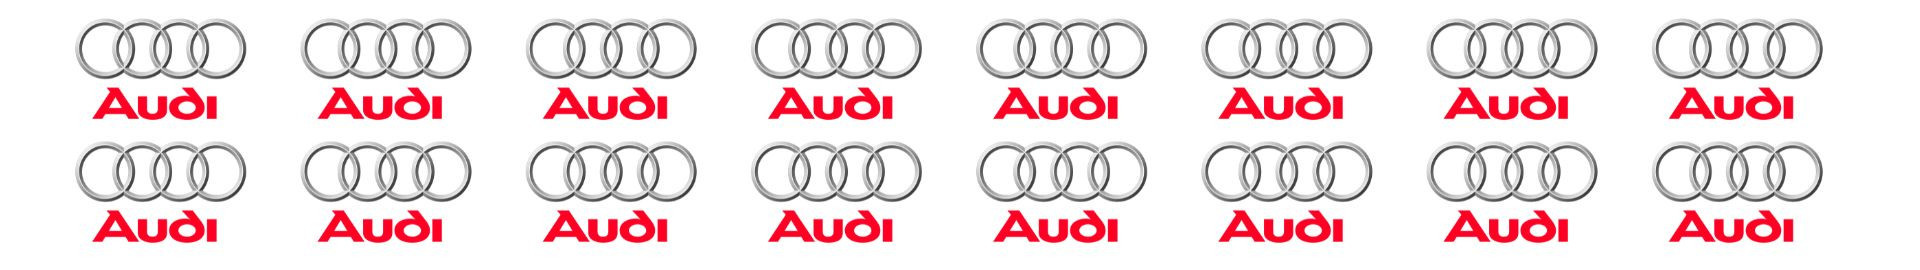 Attelages Audi